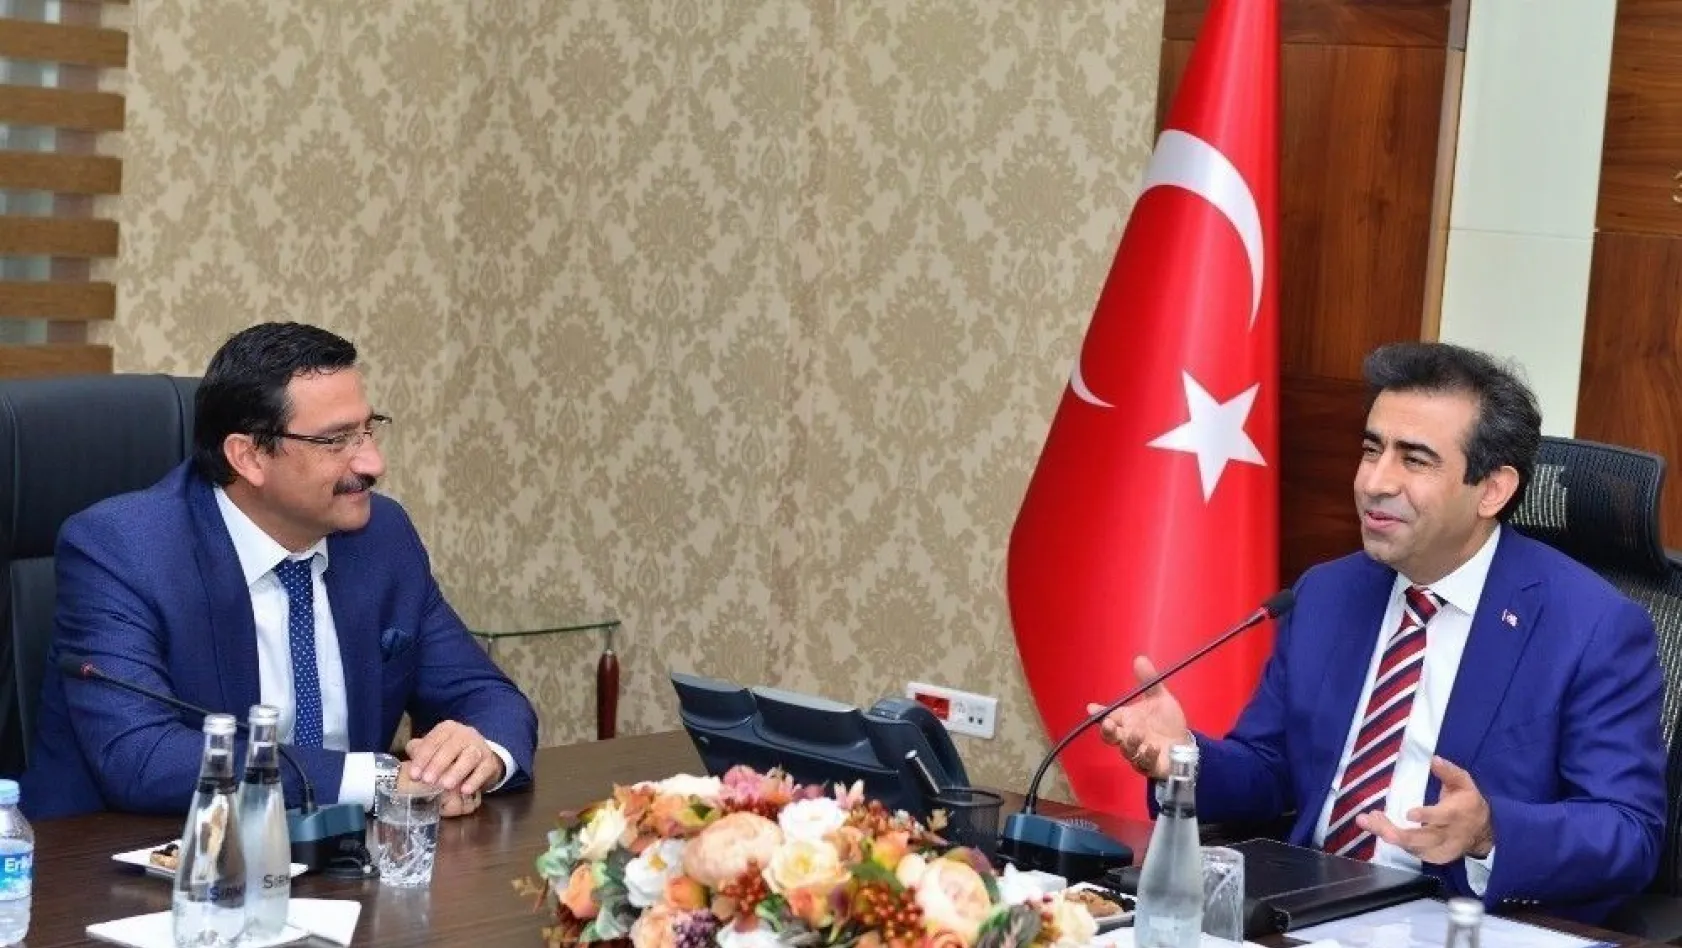 Vali Güzeloğlu, Keçiören Belediye Başkanı Ak'ı kabul etti
